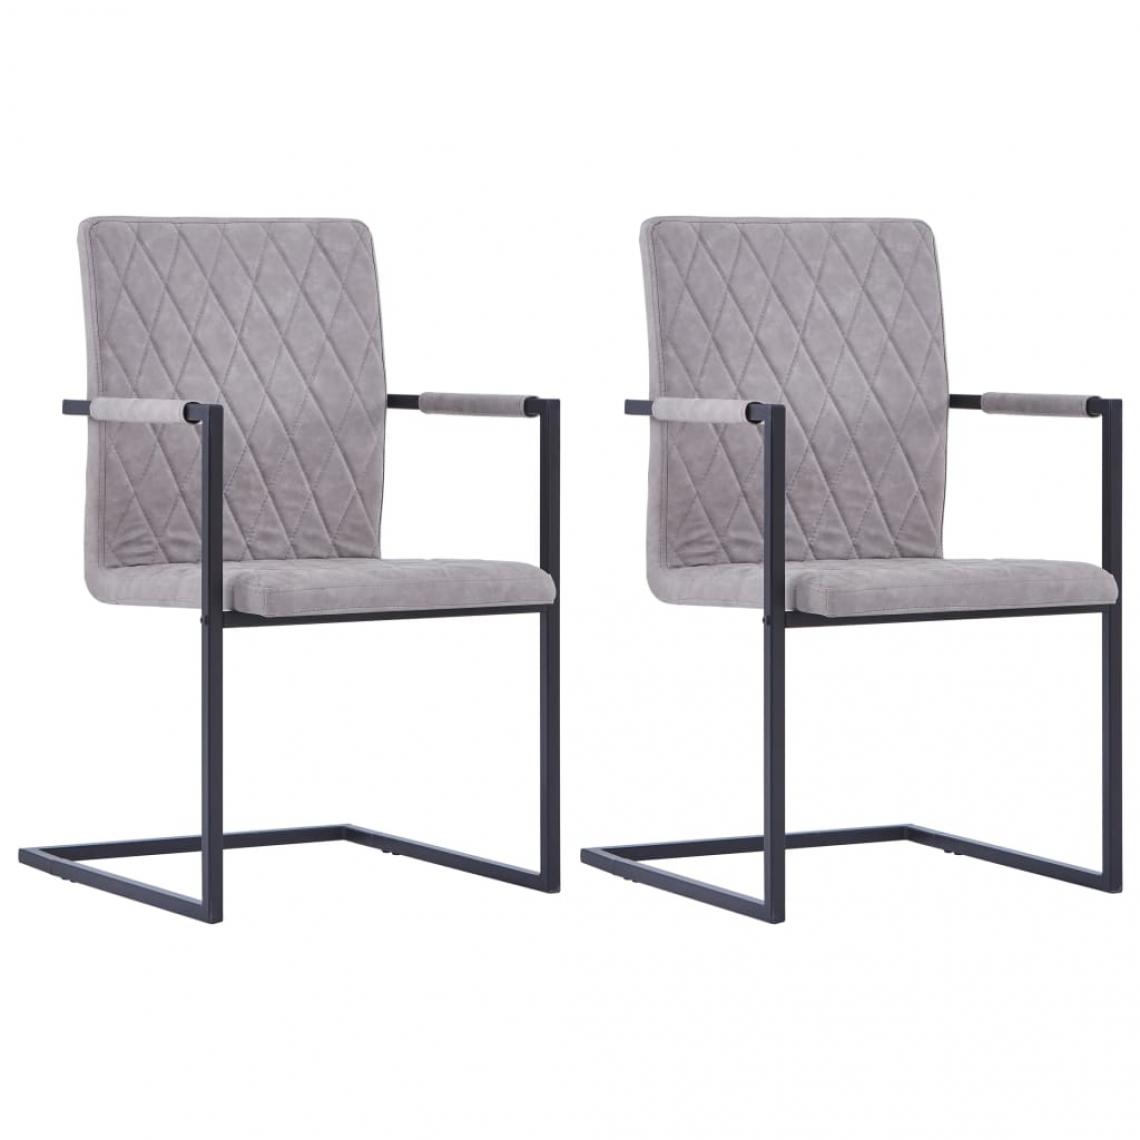 Decoshop26 - Lot de 2 chaises de salle à manger cuisine cantilever design moderne similicuir gris clair CDS020319 - Chaises